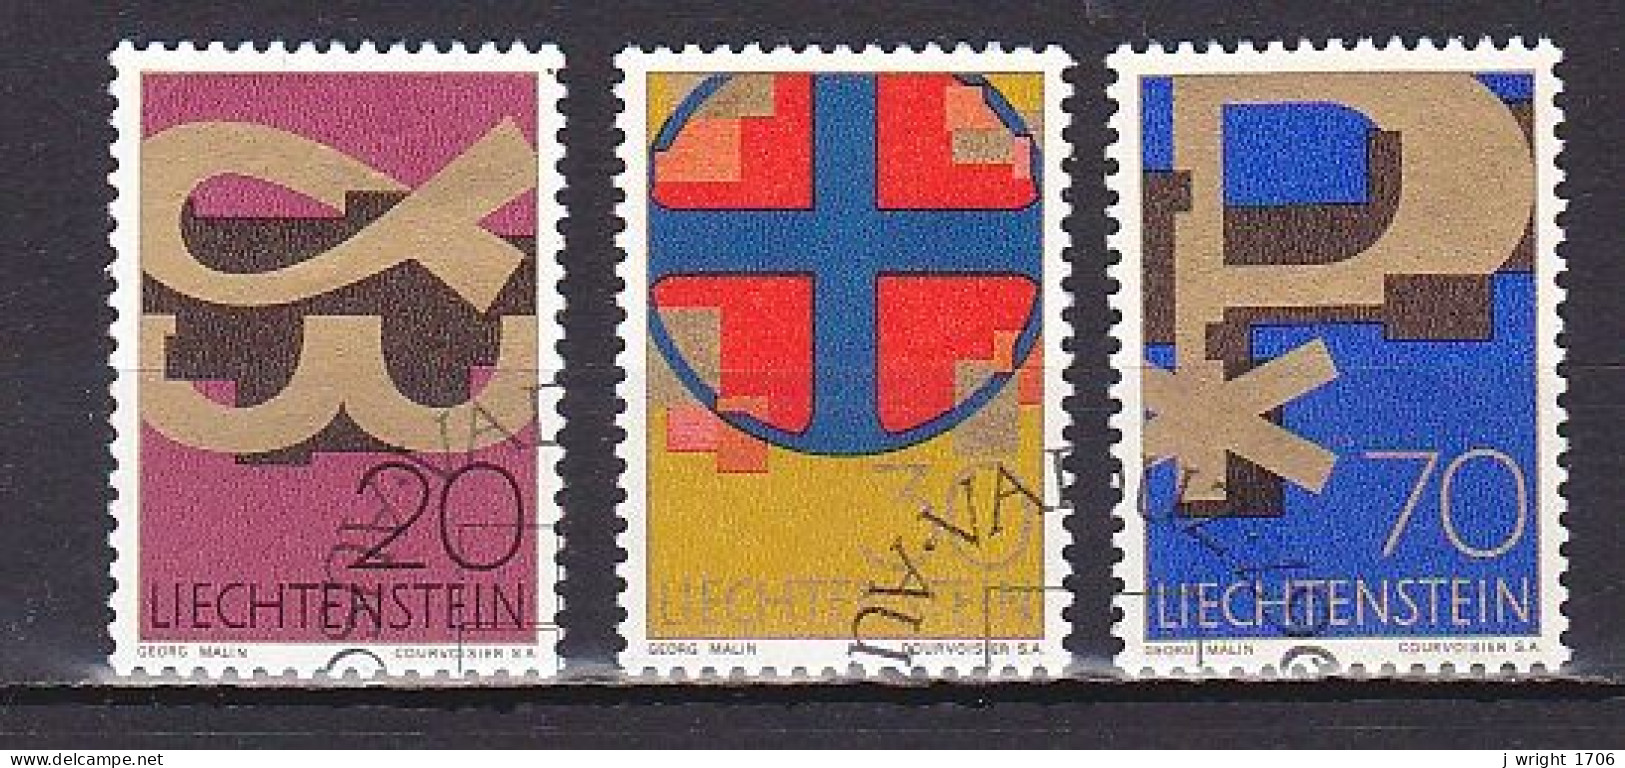 Liechtenstein, 1967, Christian Symbols, Set, CTO - Used Stamps